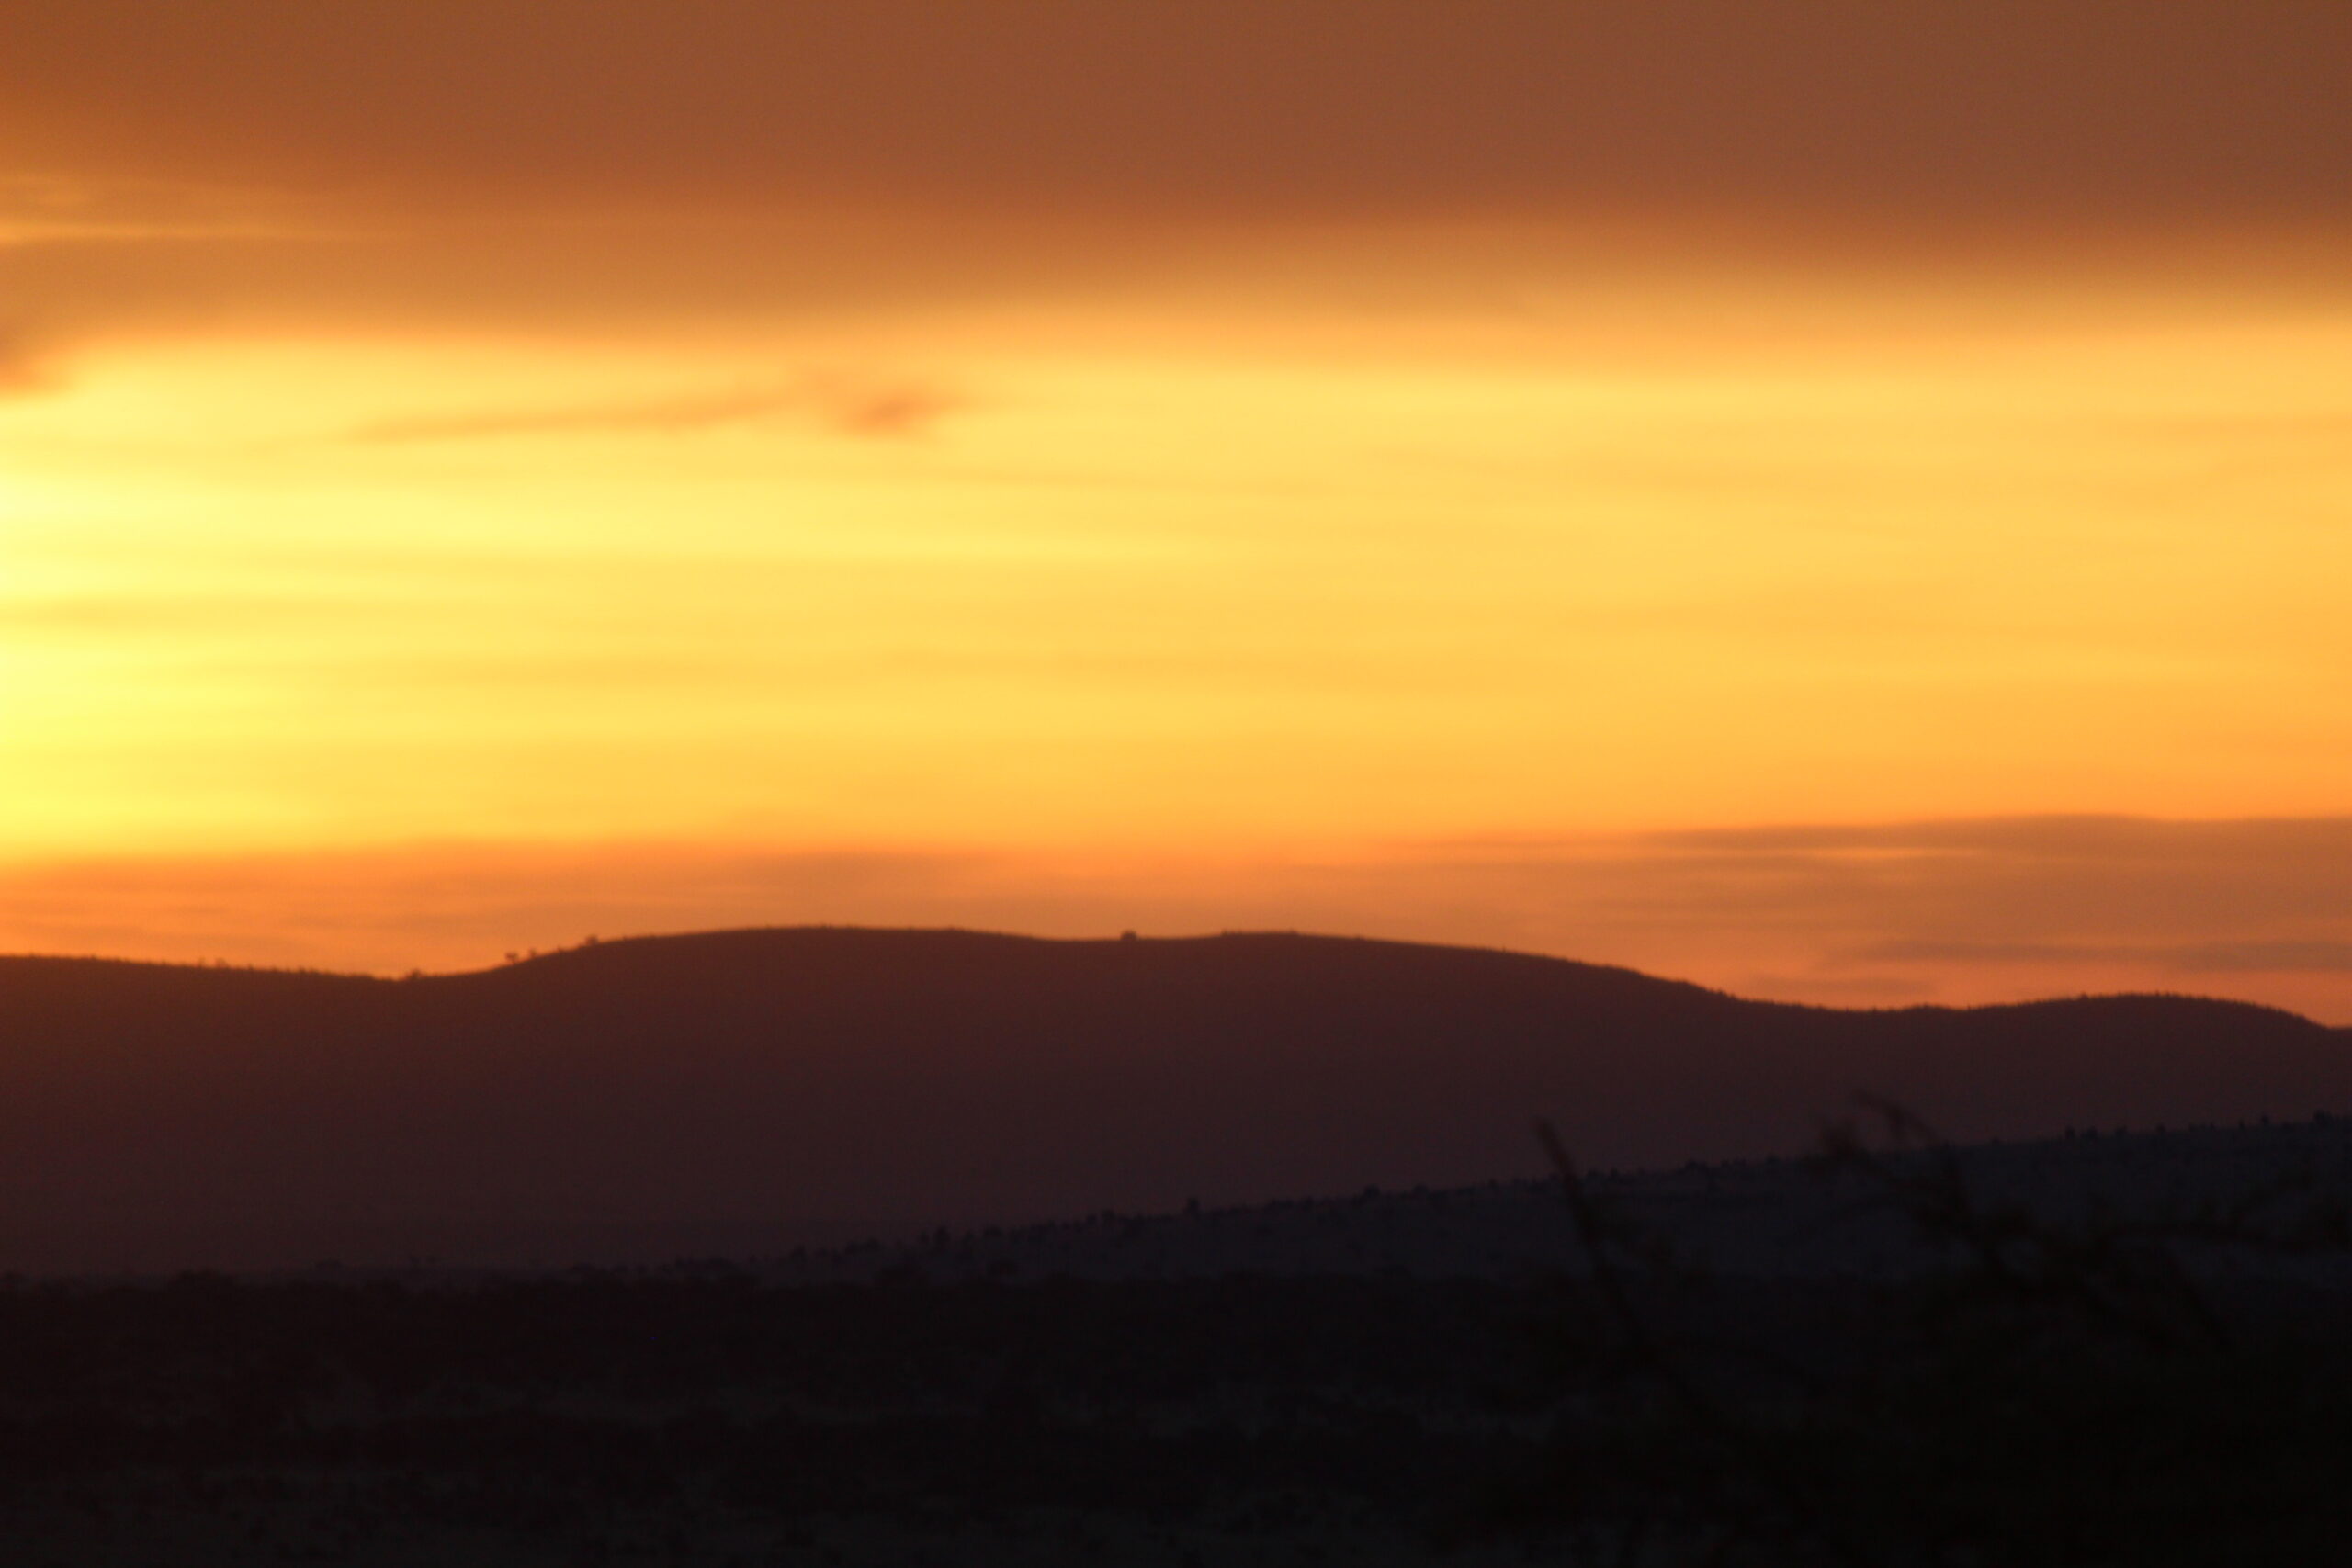 Sunset in Kenya via Mekeila